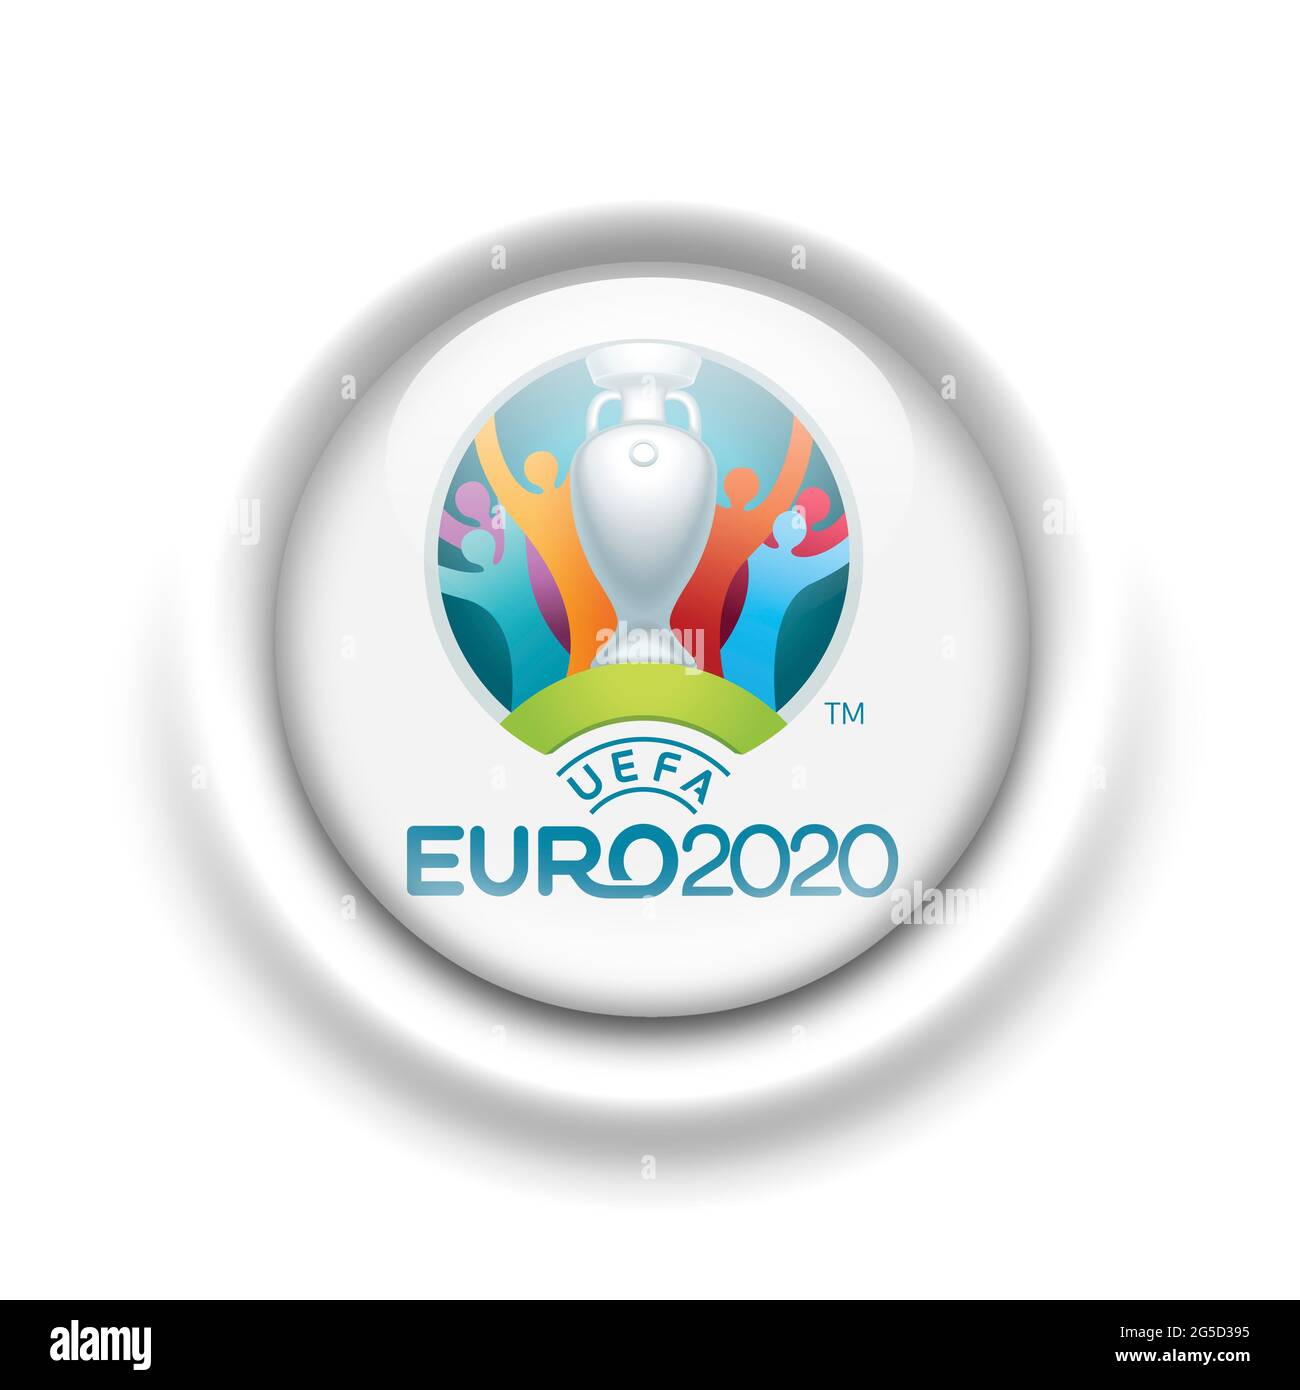 Euro 2021 logo Stock Photo - Alamy